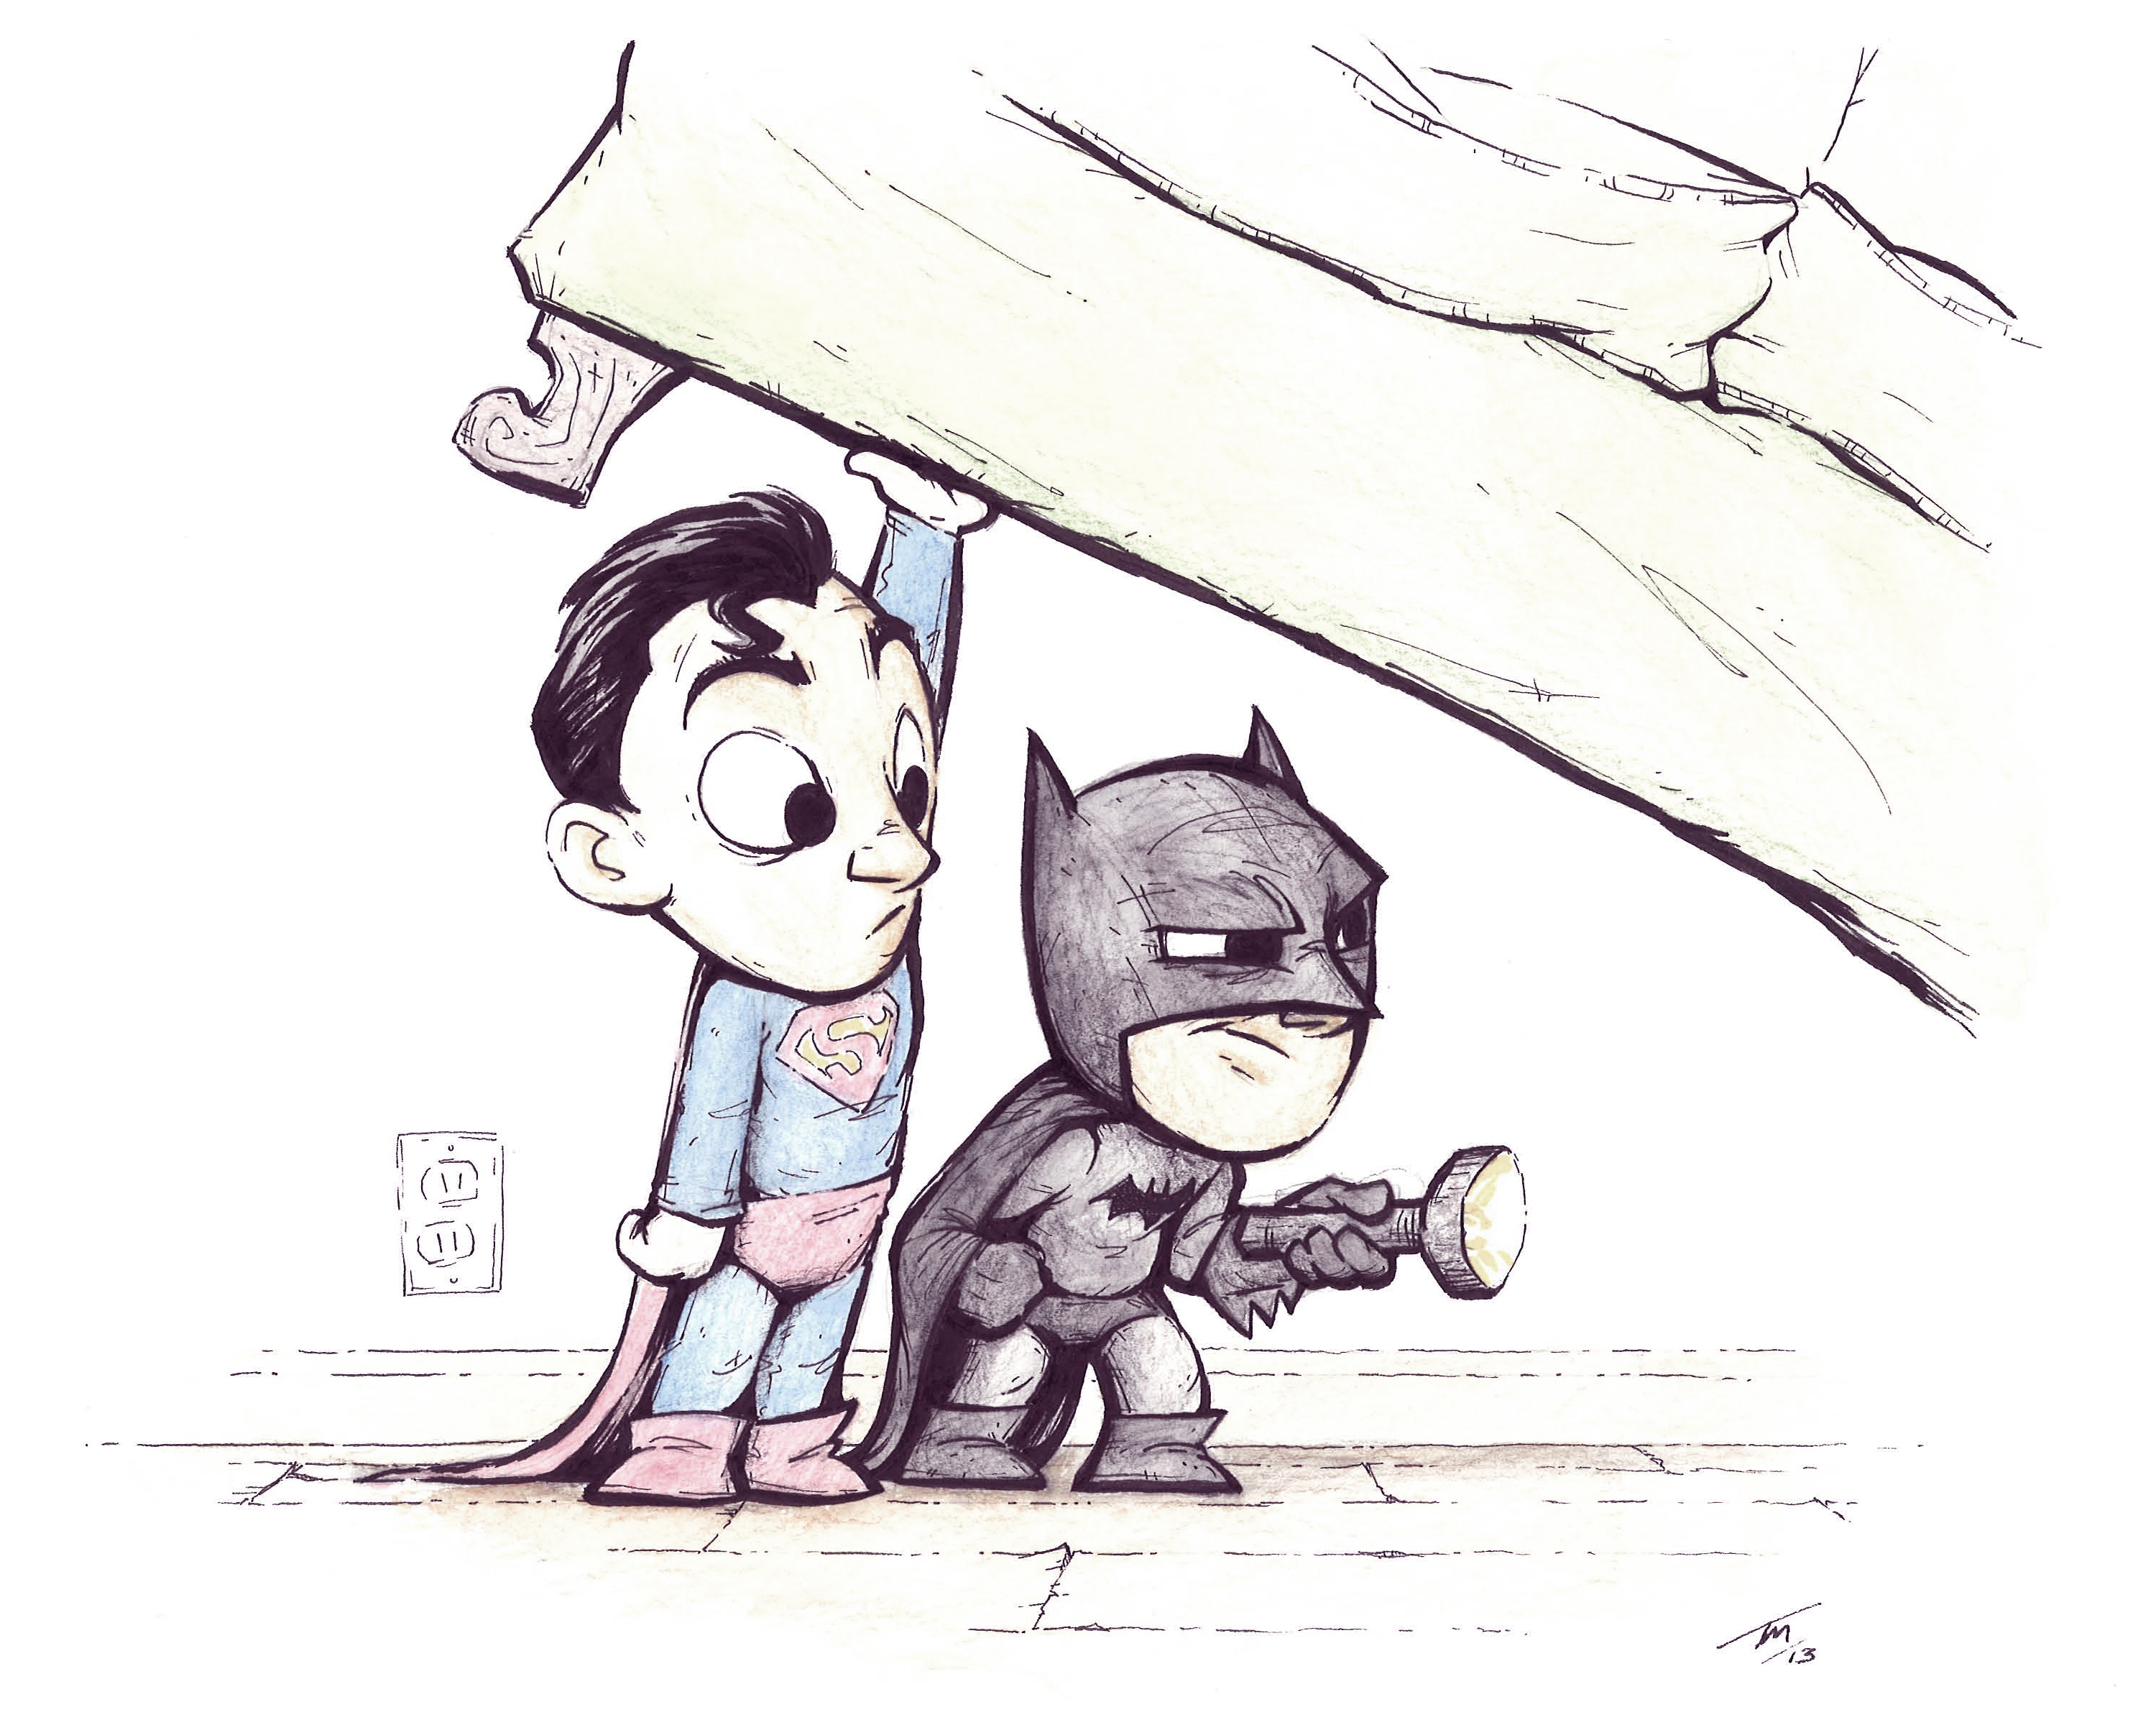 Скачать обои бесплатно Комиксы, Бэтмен, Супермен, Бэтмен/супермен картинка на рабочий стол ПК